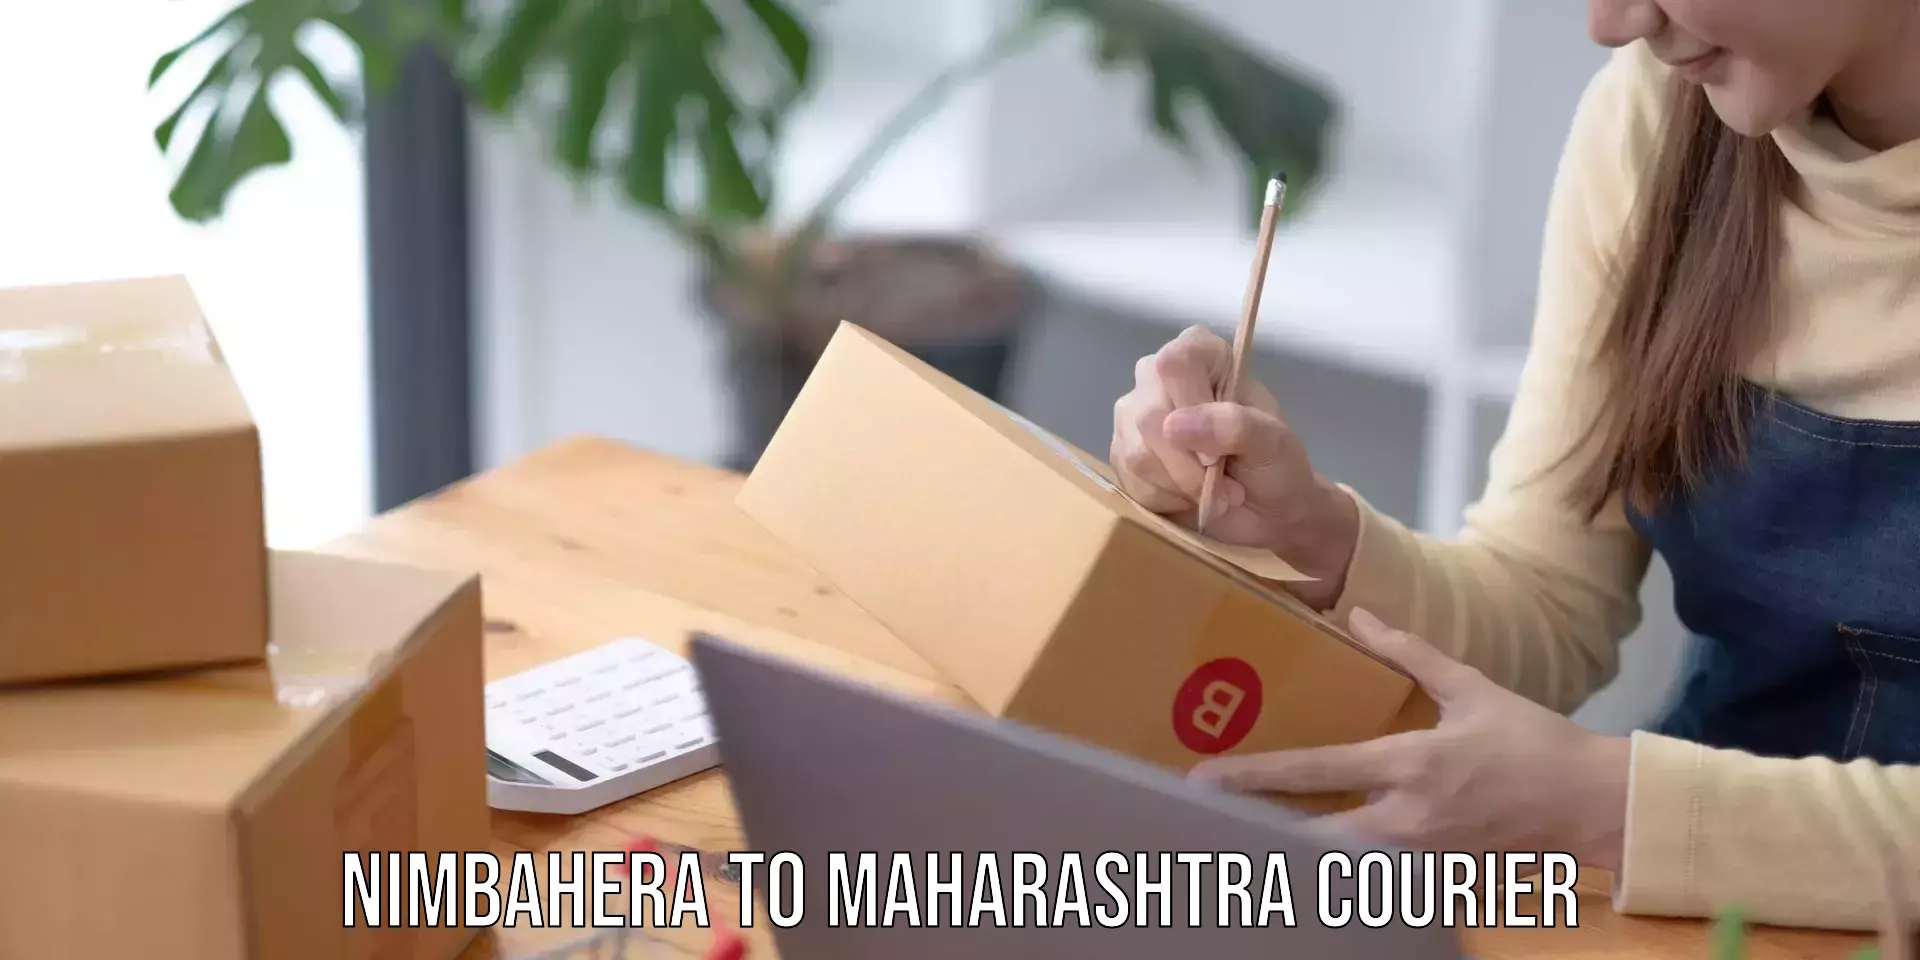 Cash on delivery service Nimbahera to Maharashtra